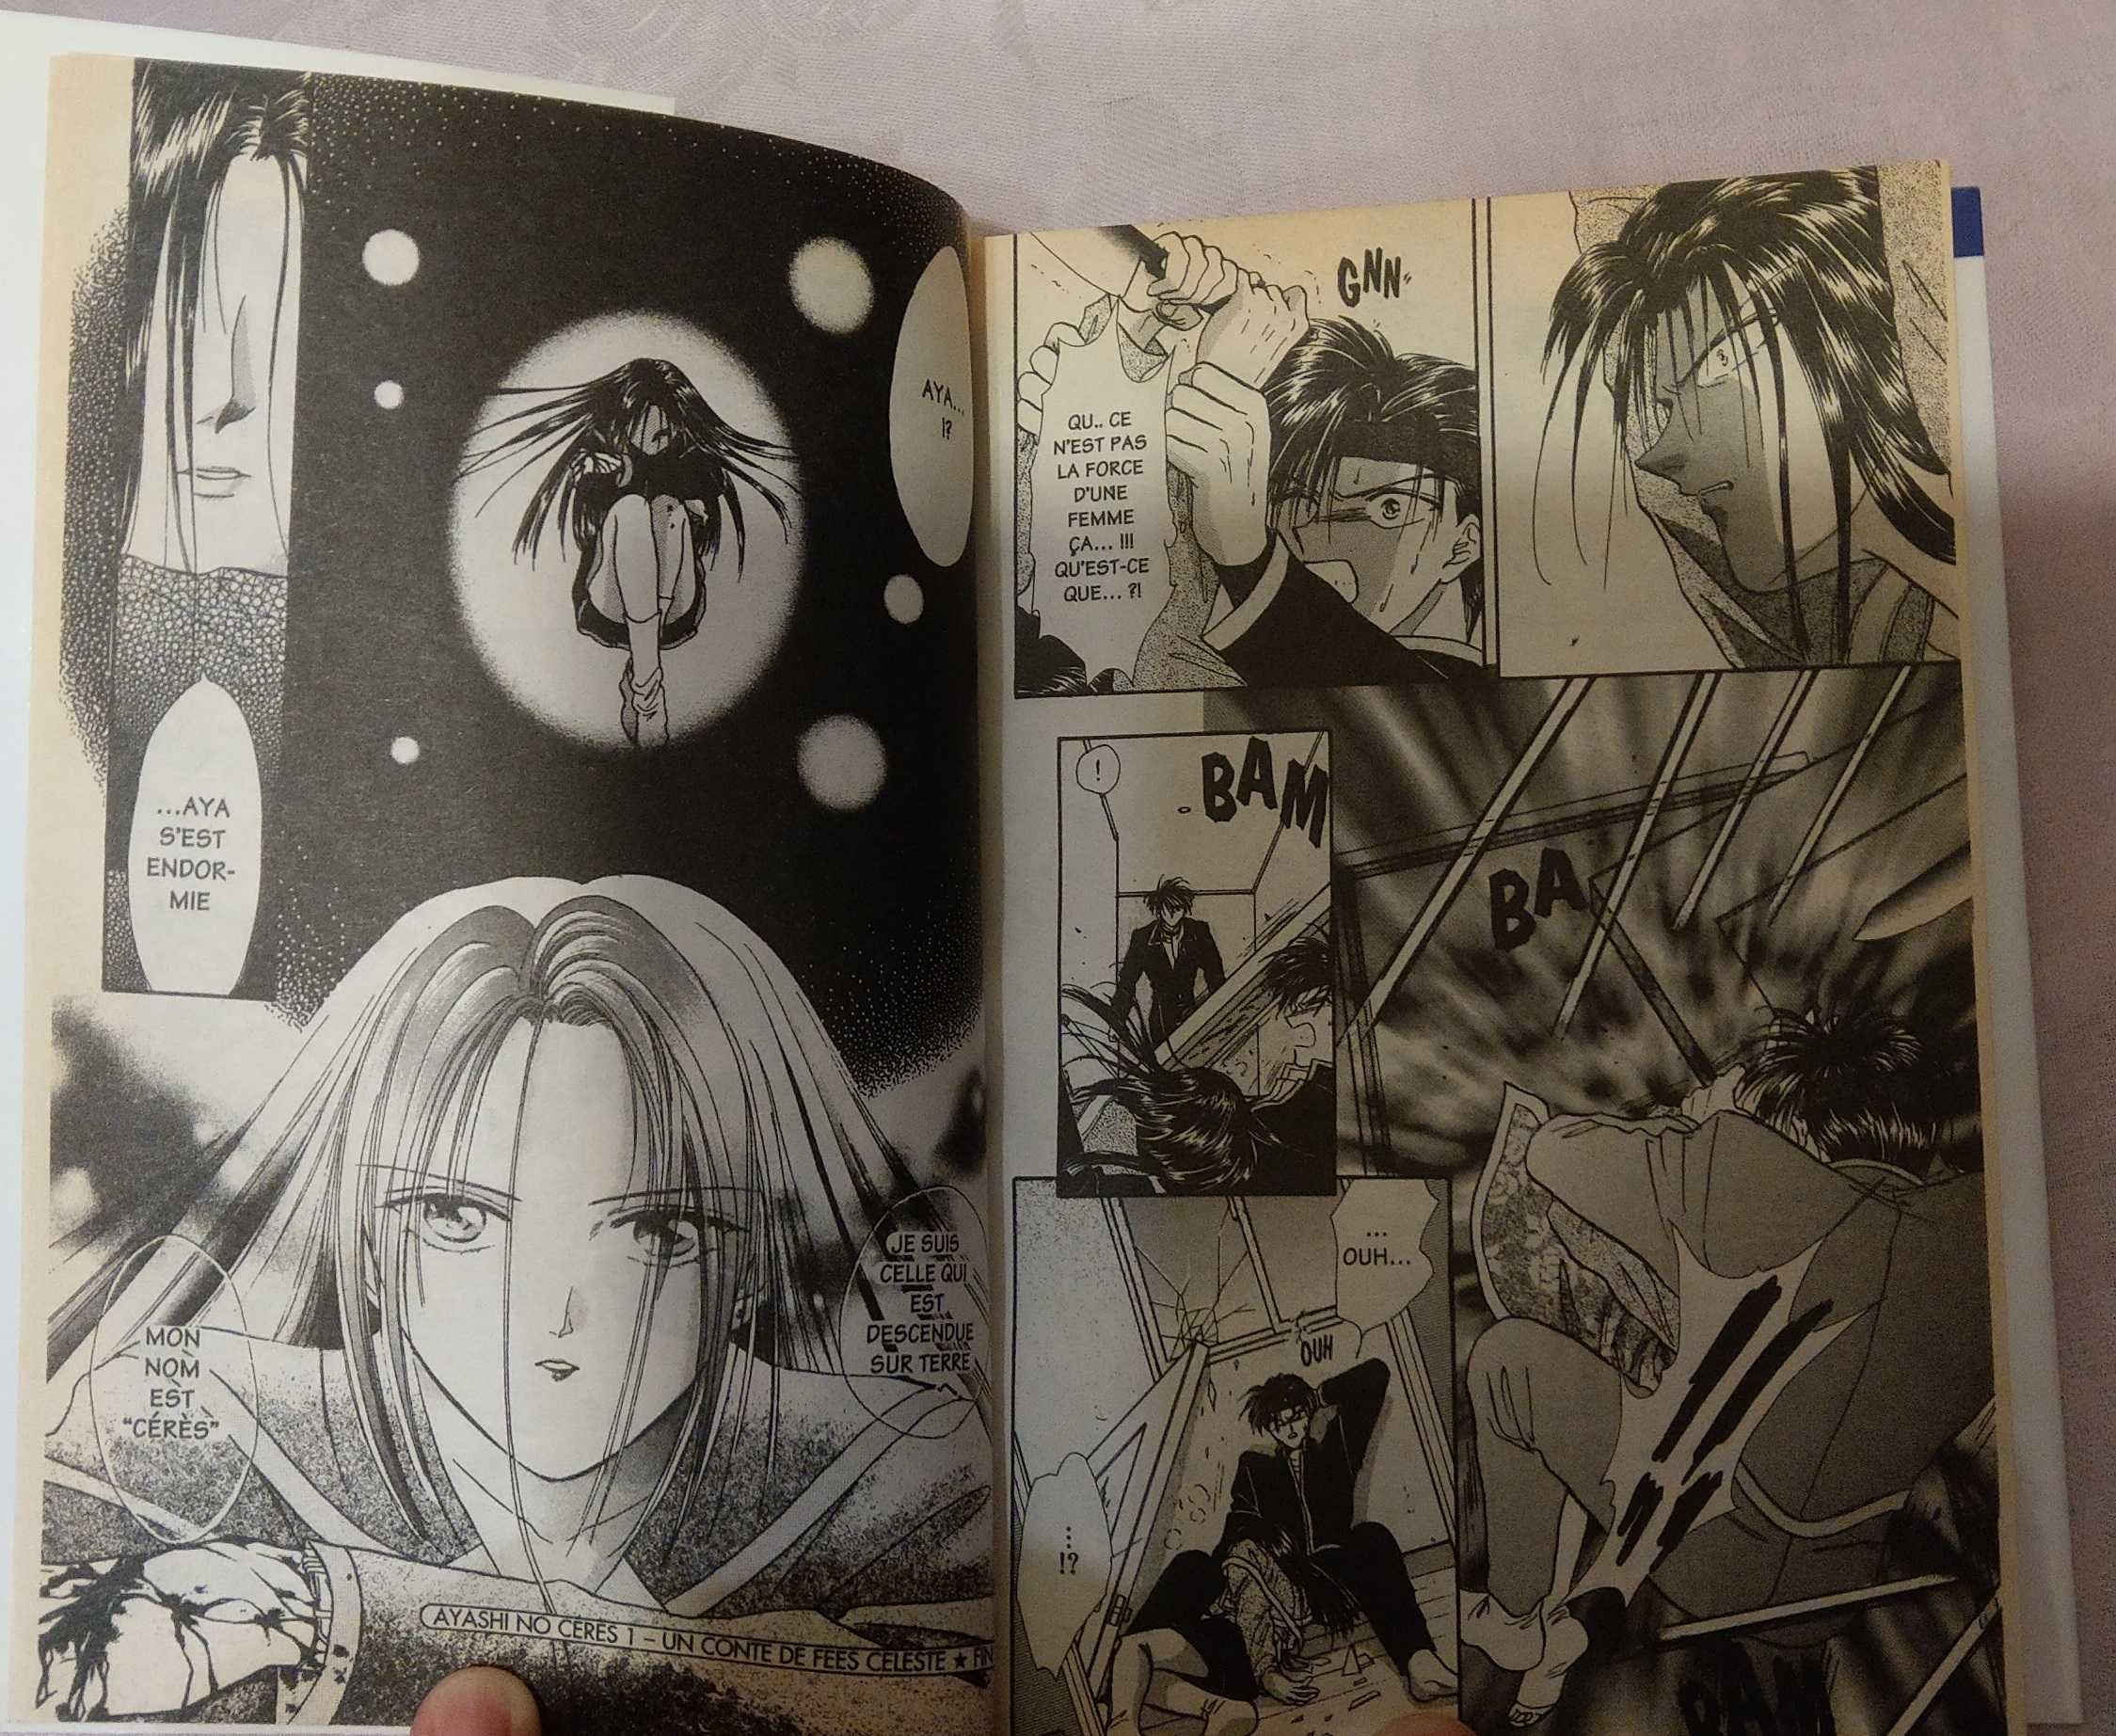 Manga Ayashi no Ceres nowa FR polskie tłumaczenie wysyłka